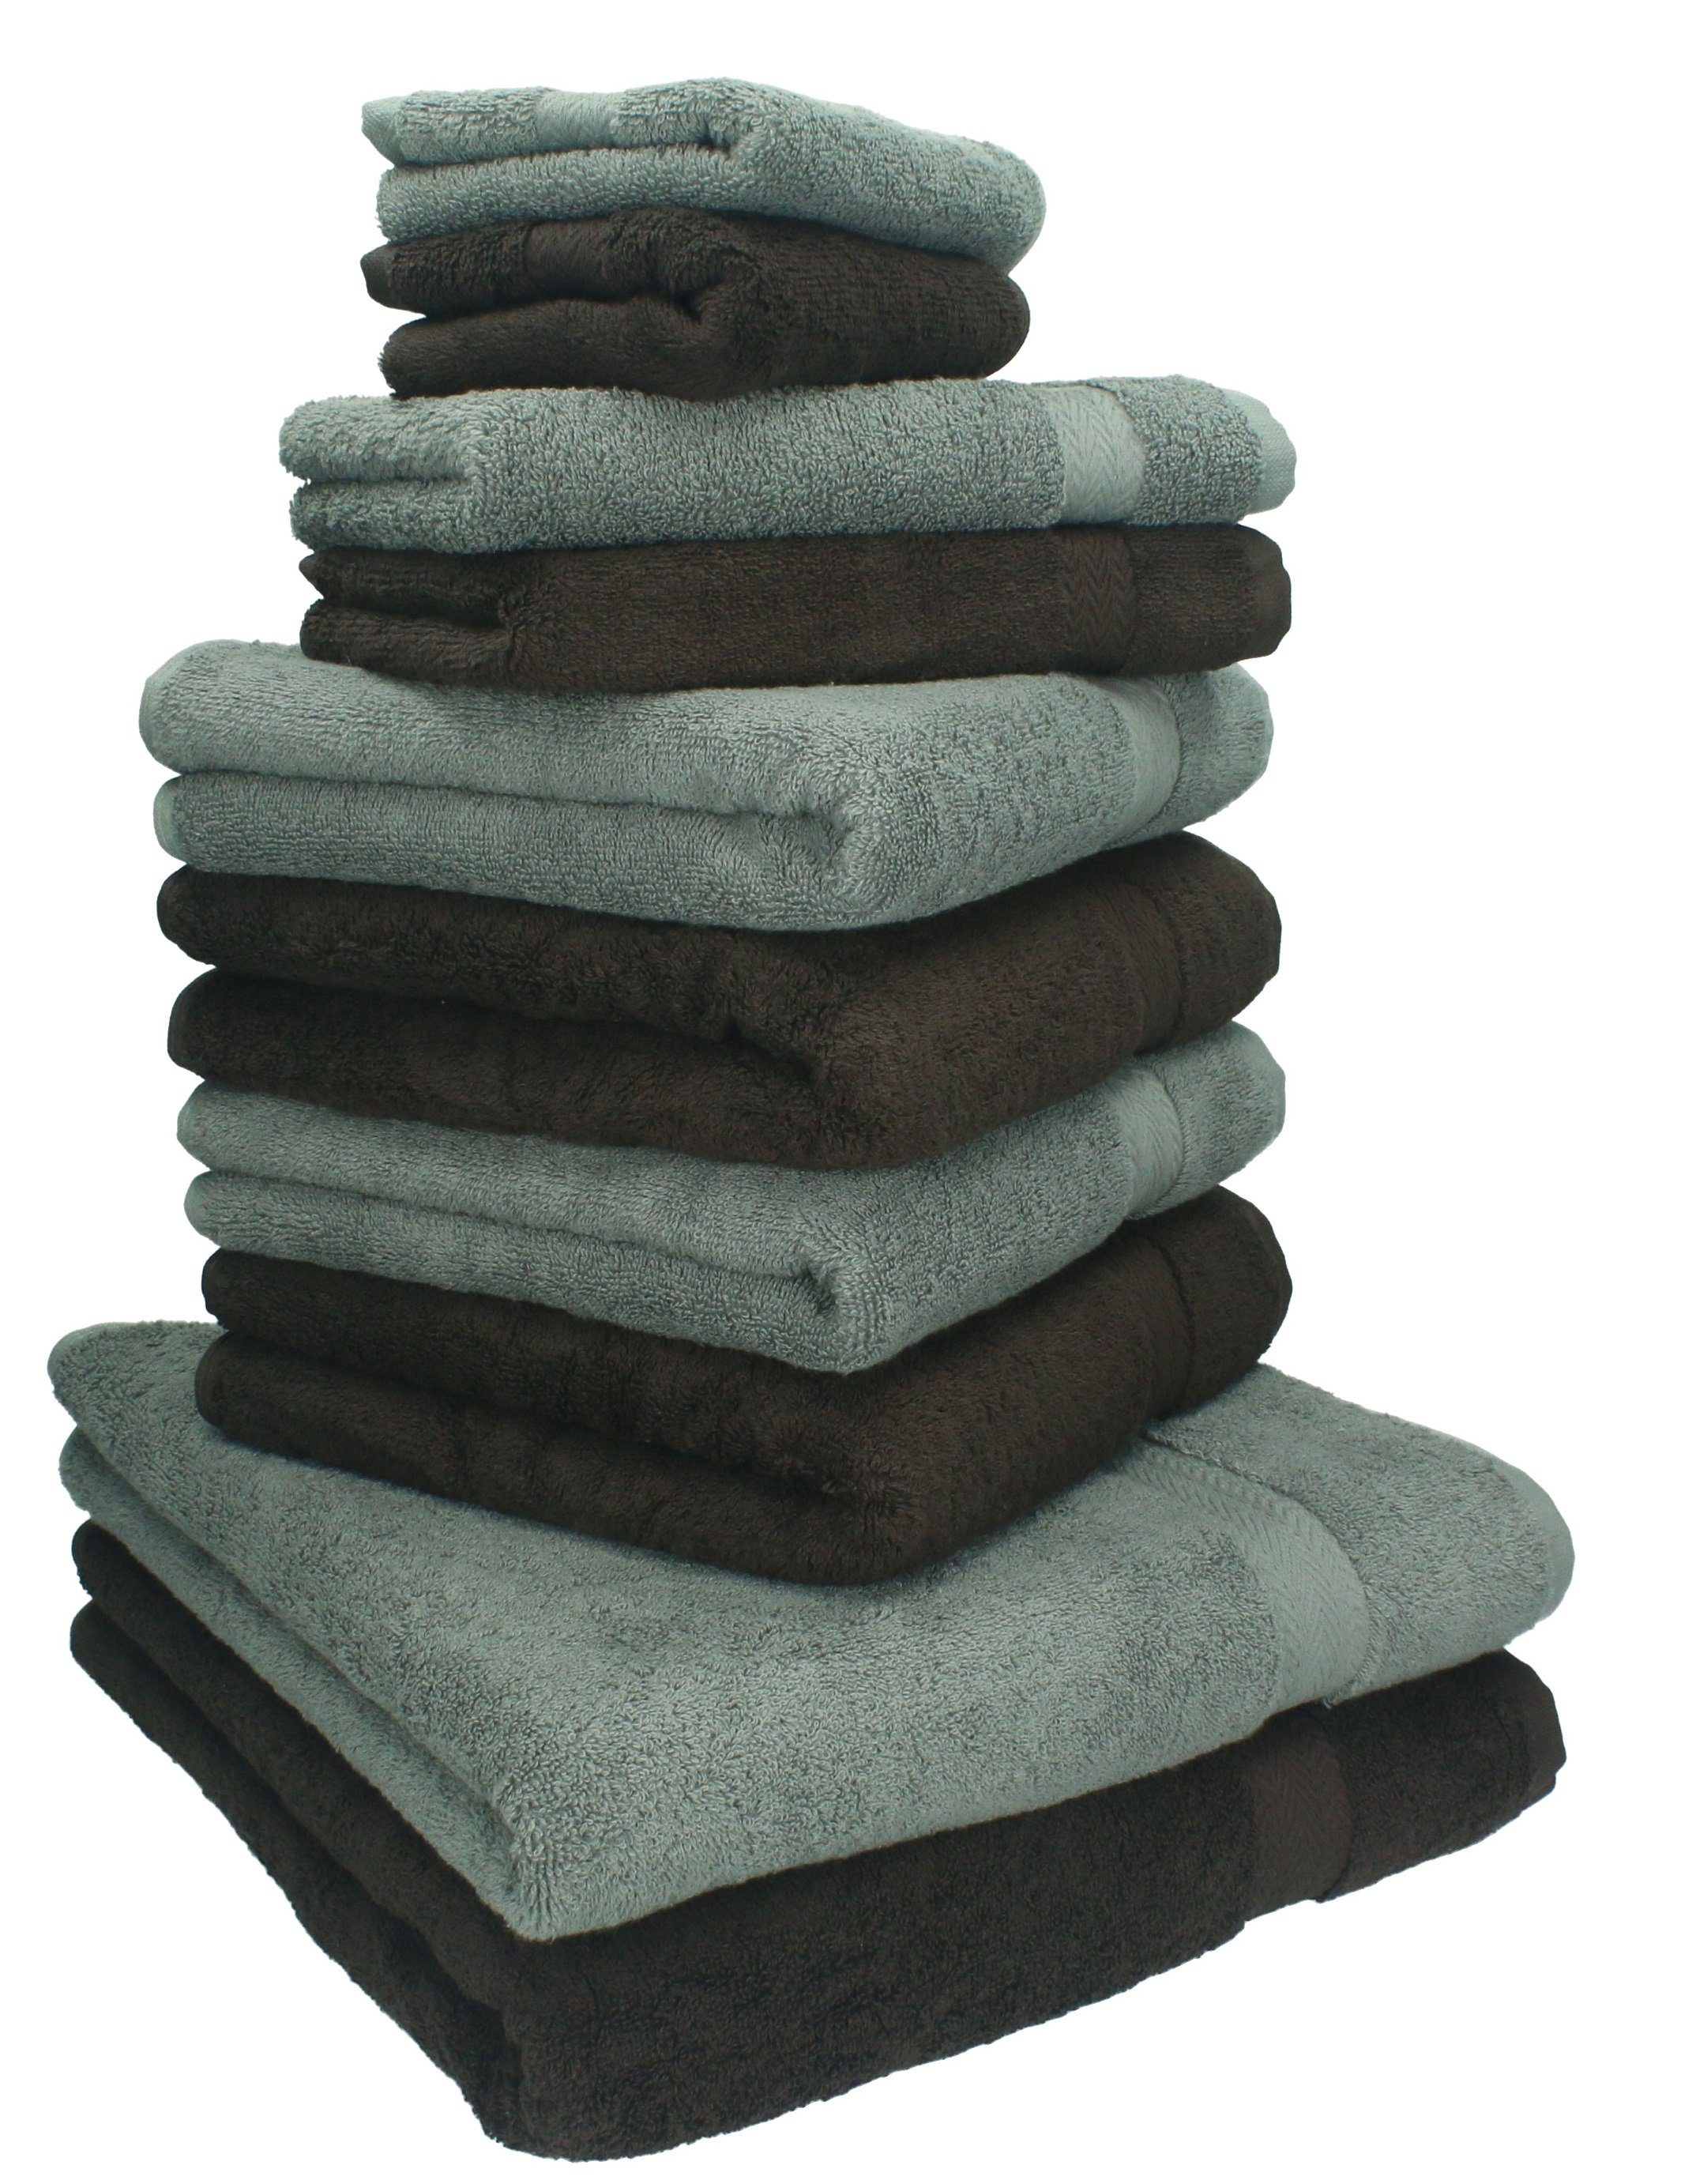 Betz Handtuch Set 10-TLG. Handtuch-Set Classic Farbe dunkelbraun und anthrazit, 100% Baumwolle